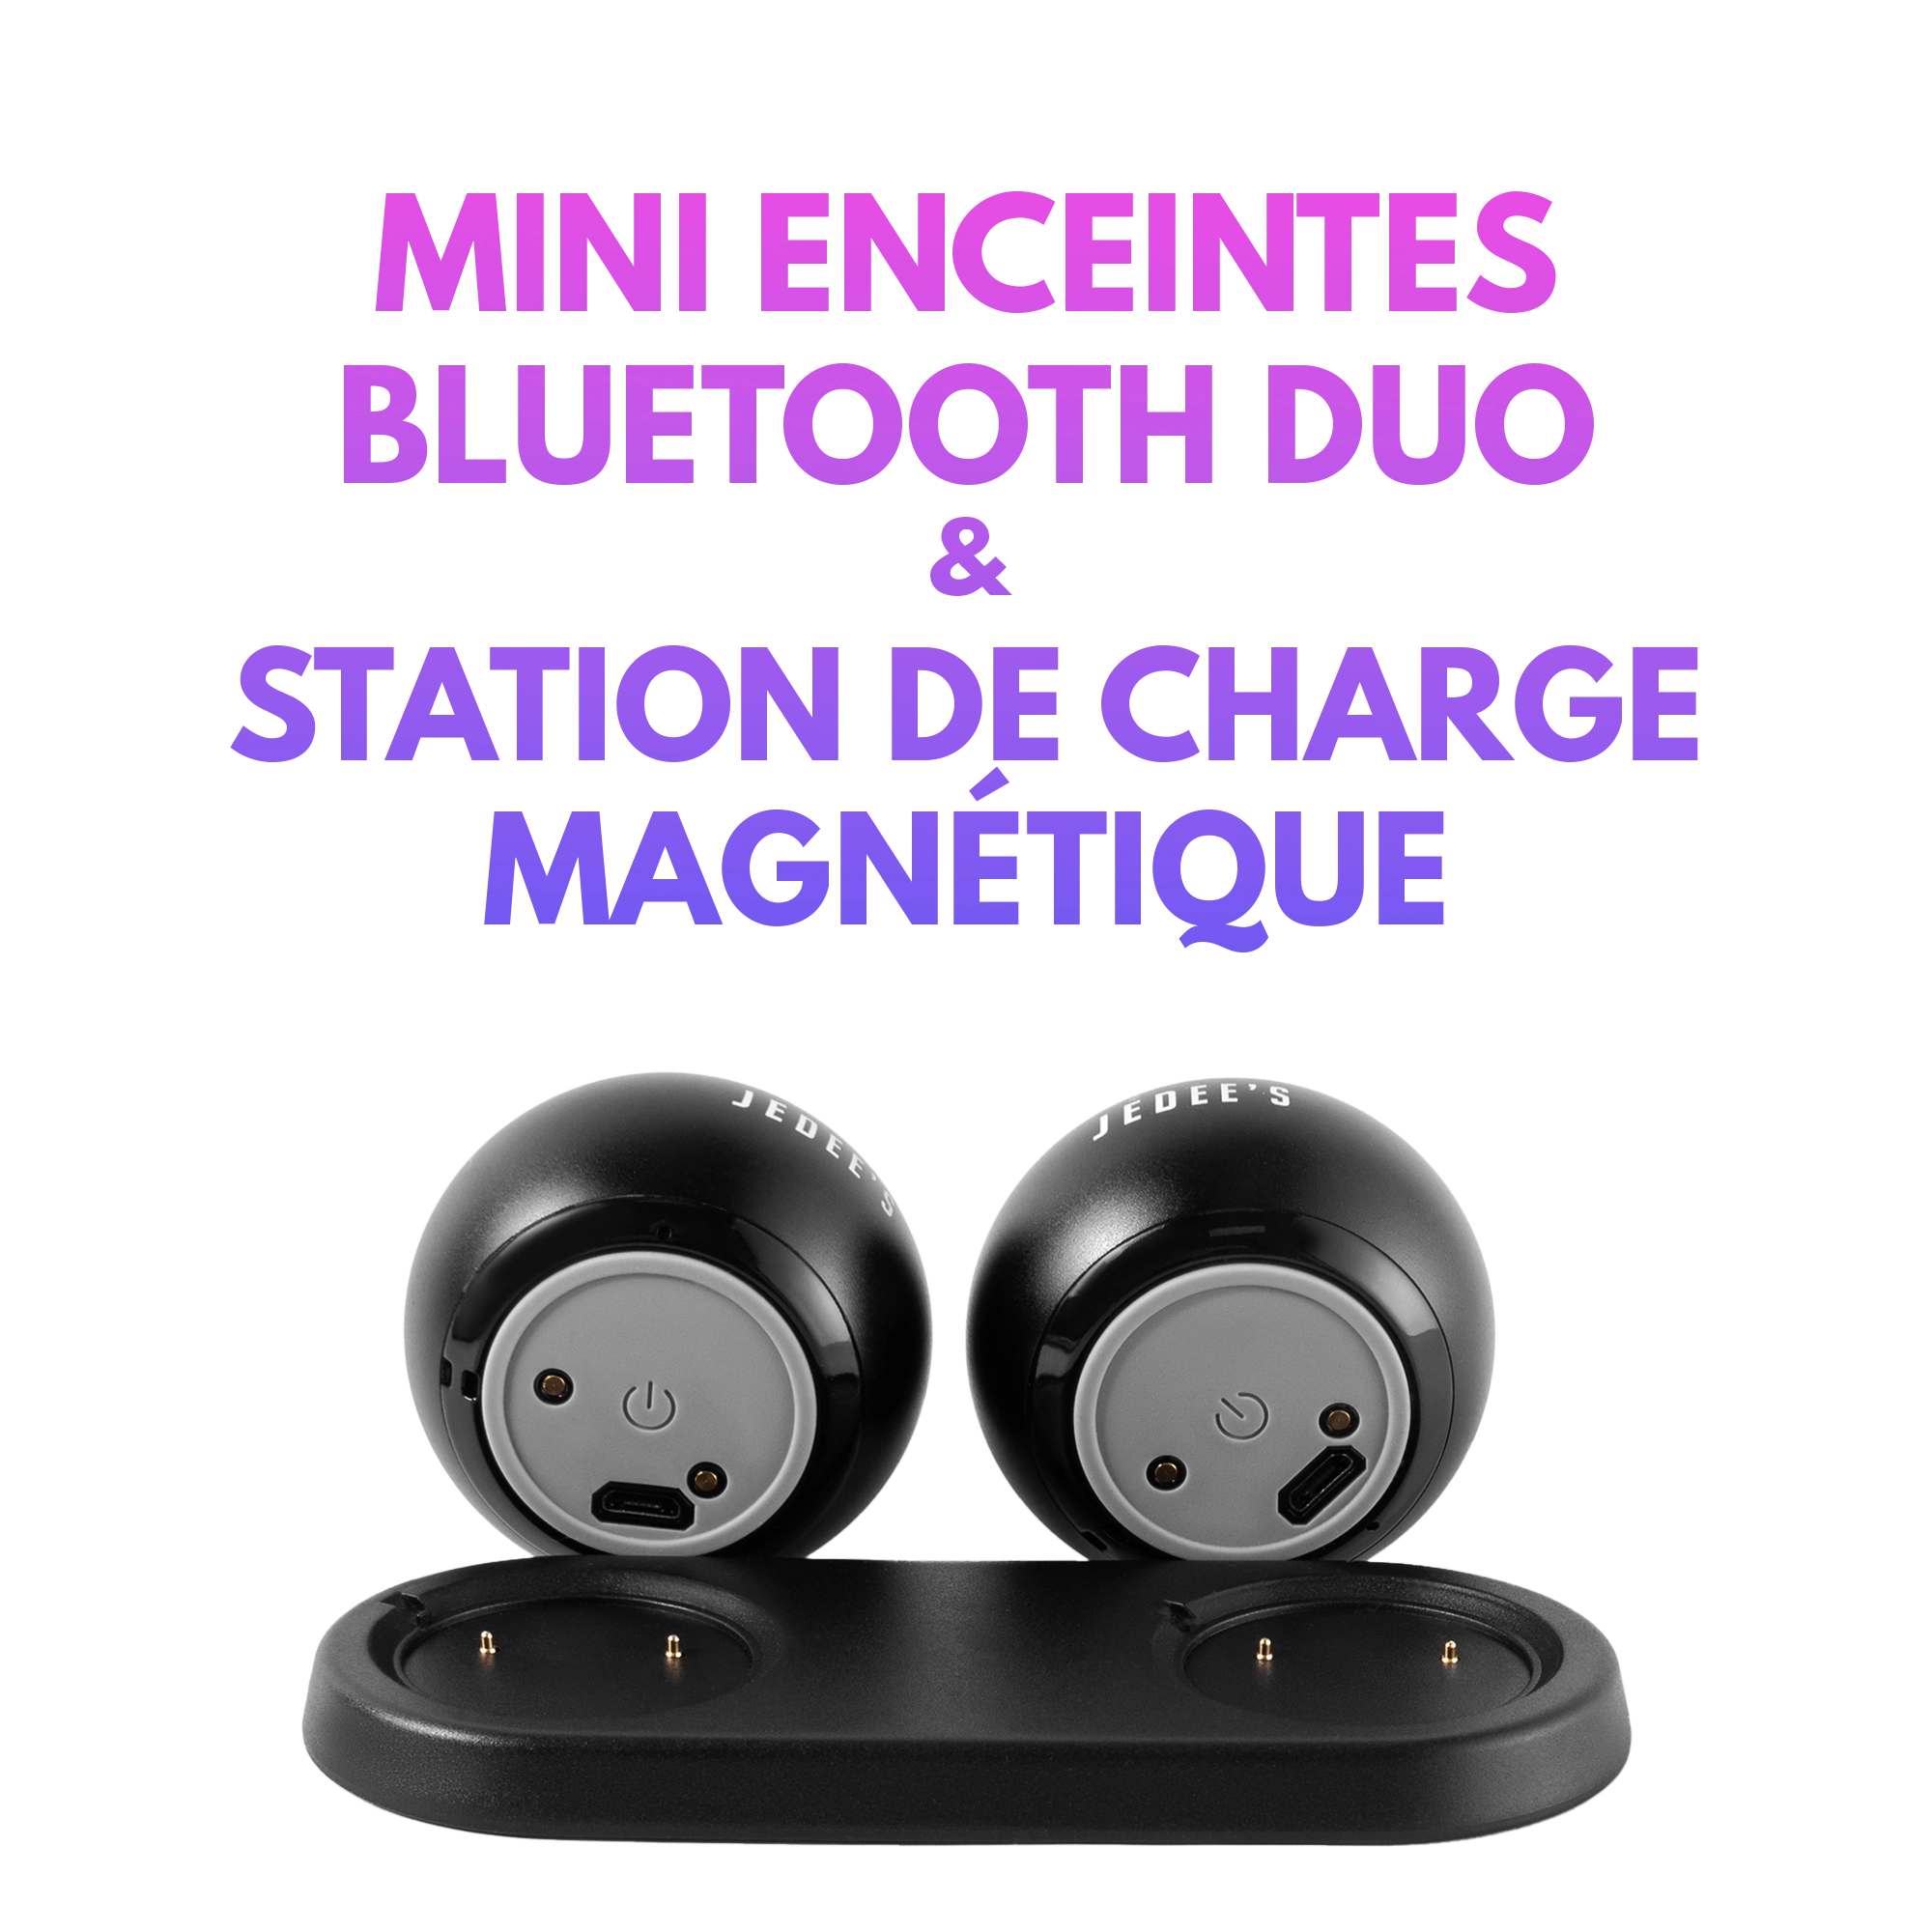 Mini Enceinte Bluetooth duo Avec Station de charge Magnétique Jedee's